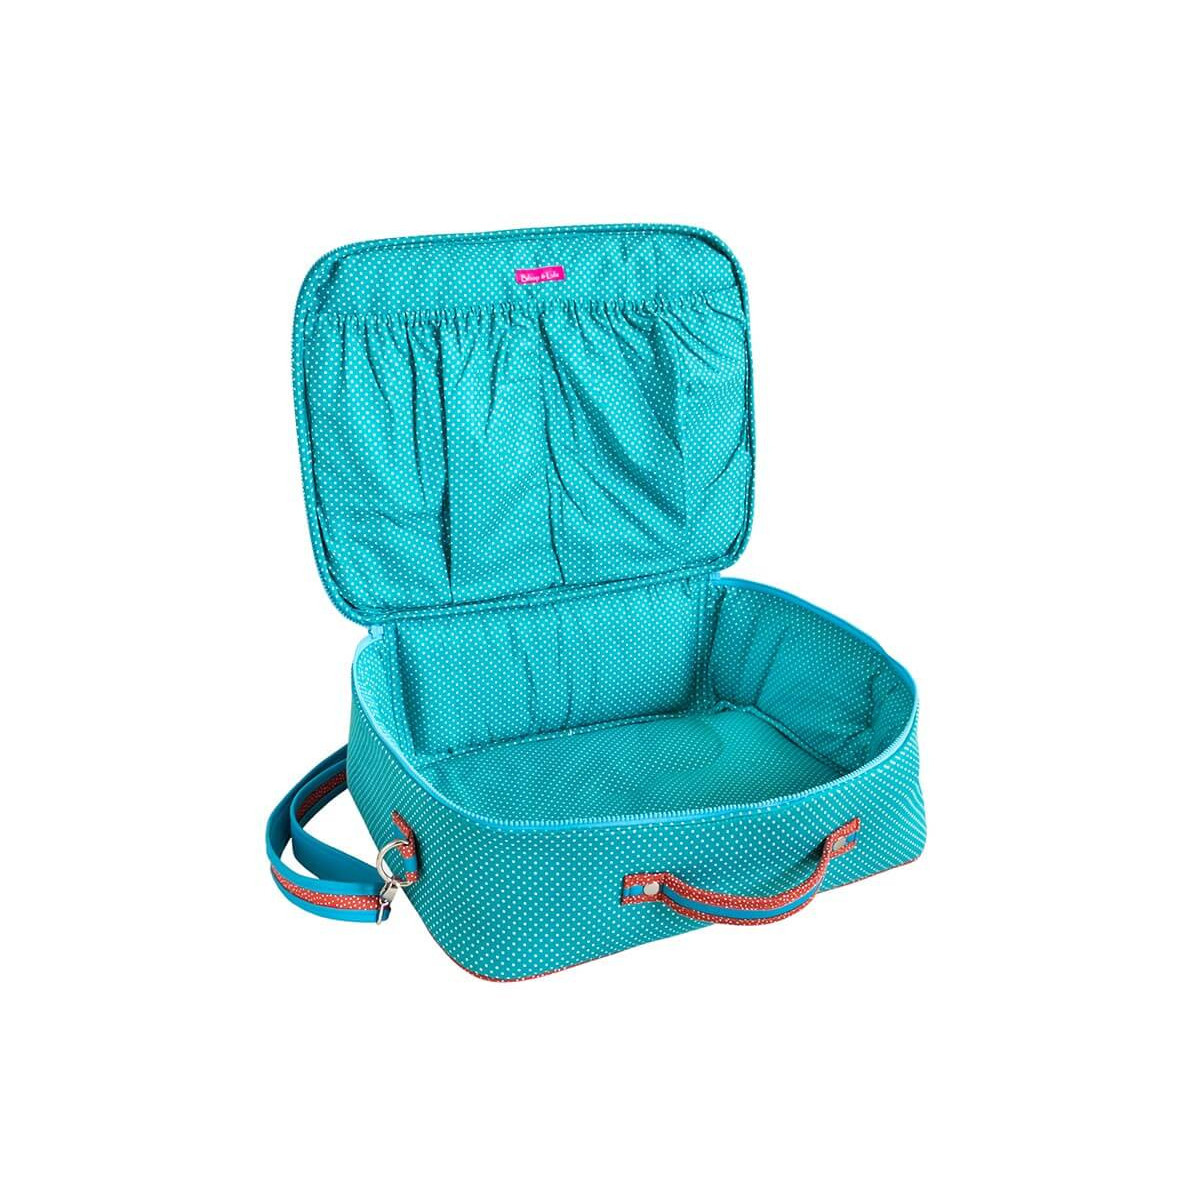 Valise originale de voyage bébé, enfant turquoise motif pois, animaux